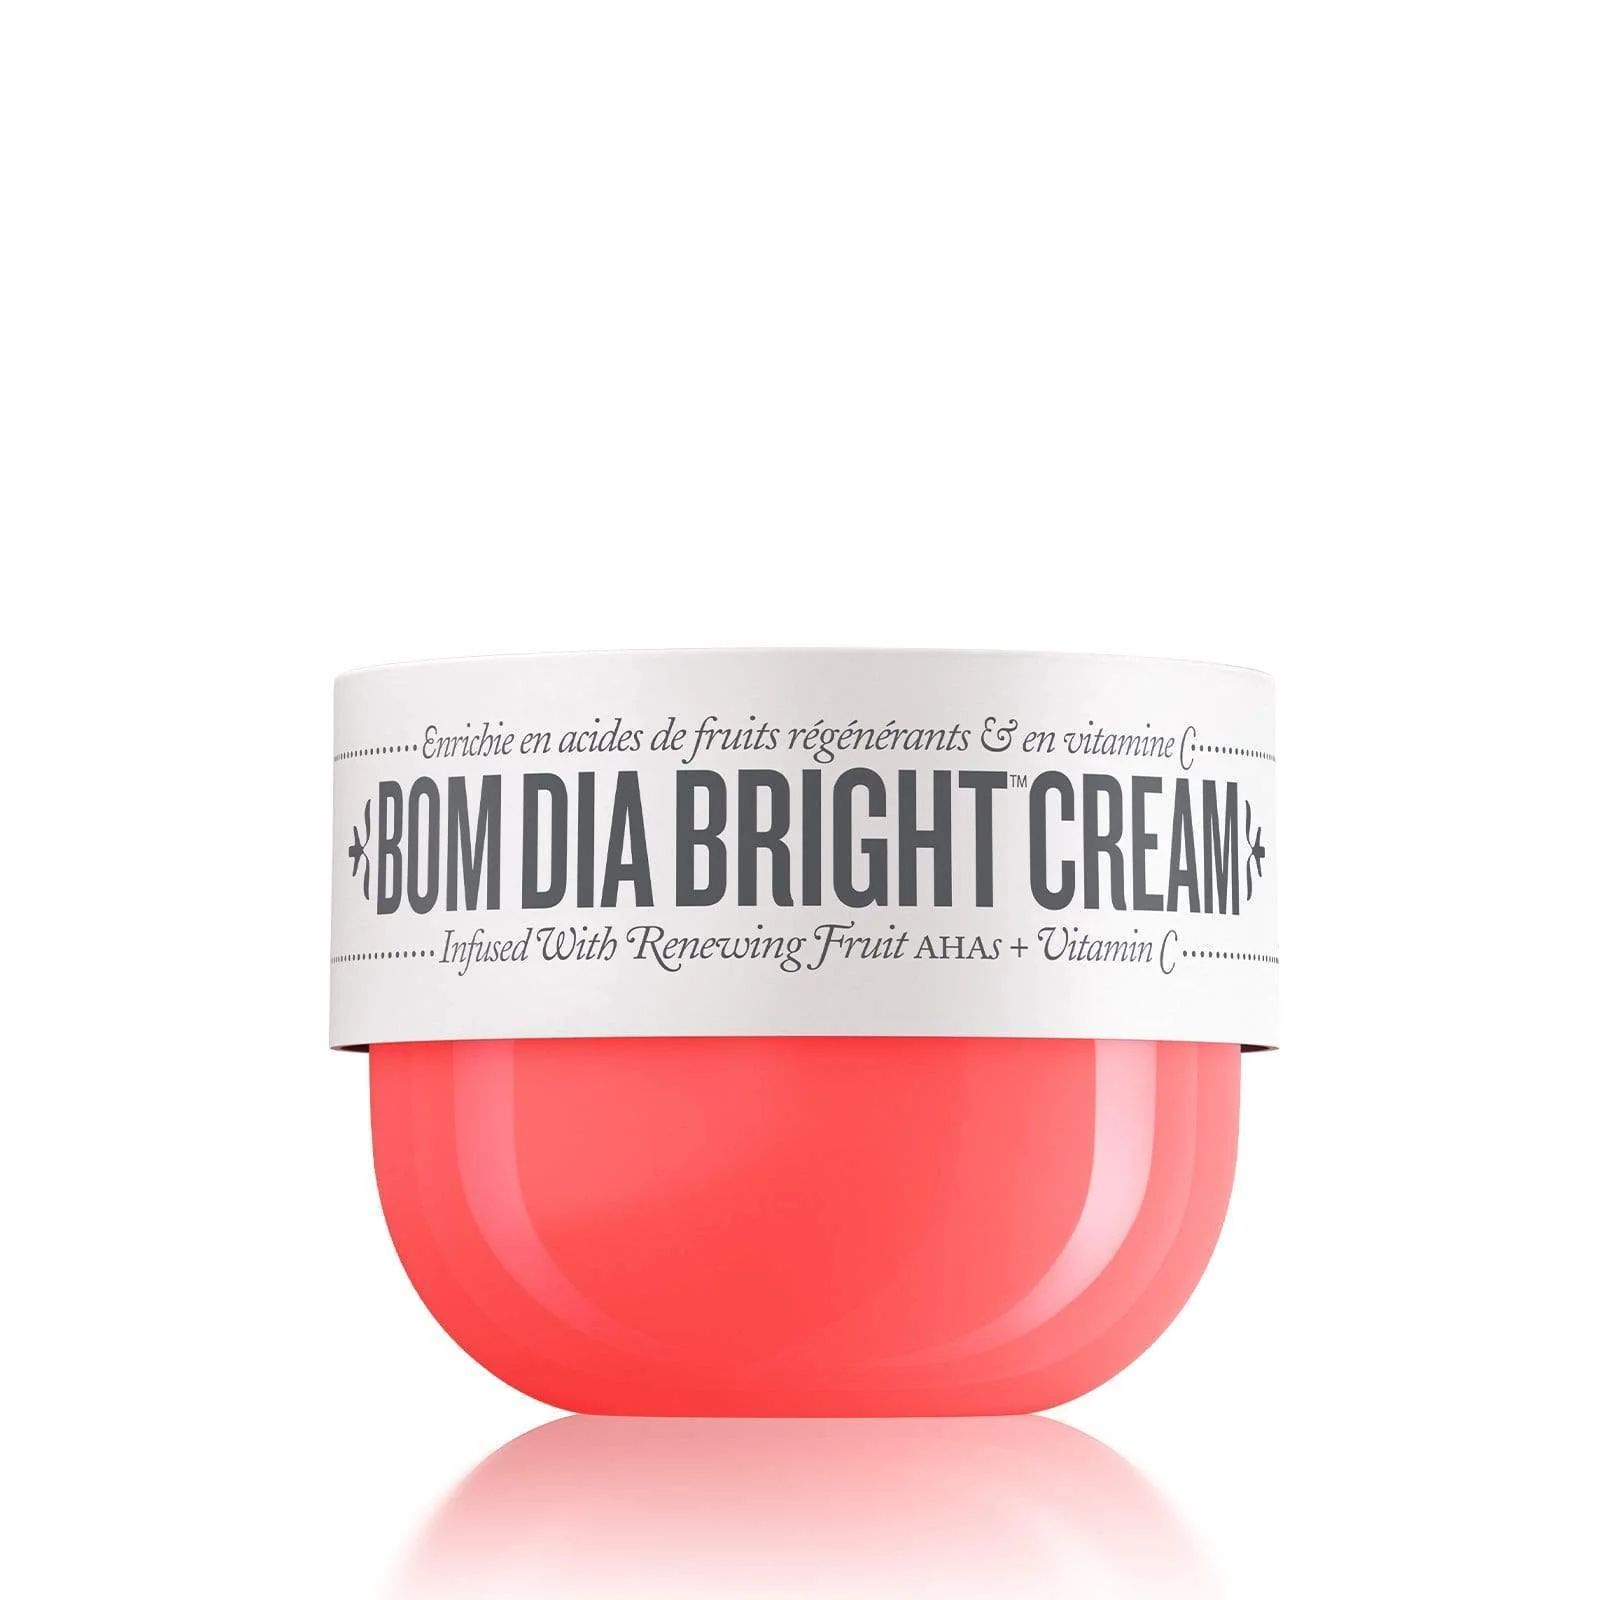 Bom Dia Bright Body Cream with AHAs & Vit C - Sol de Janeiro | Sol de Janeiro